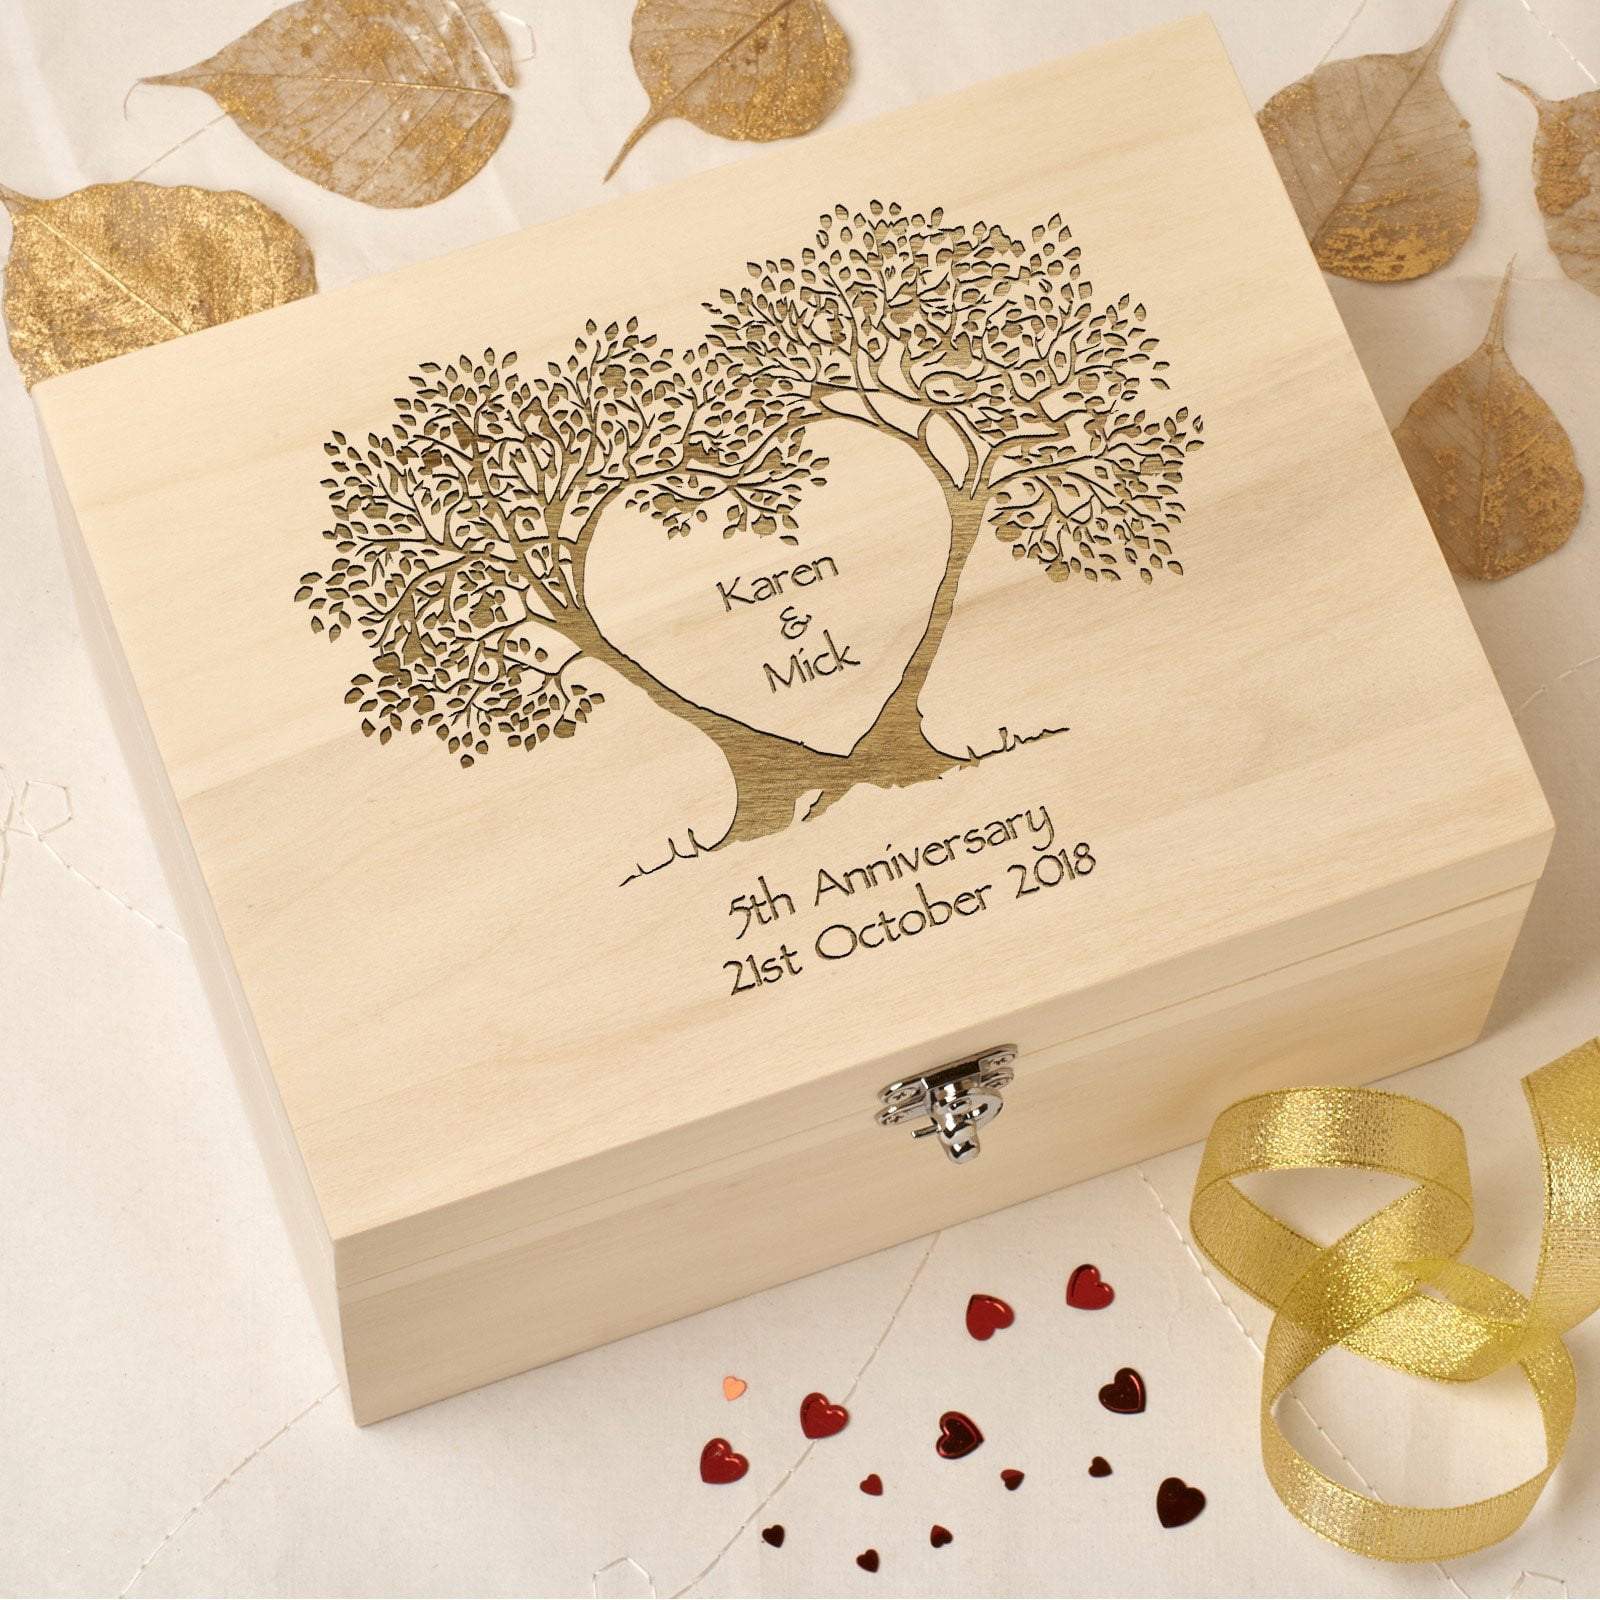 Keepsake Box - Personalised Wedding Anniversary Wooden Memories Or Keepsake Box - Tree Heart